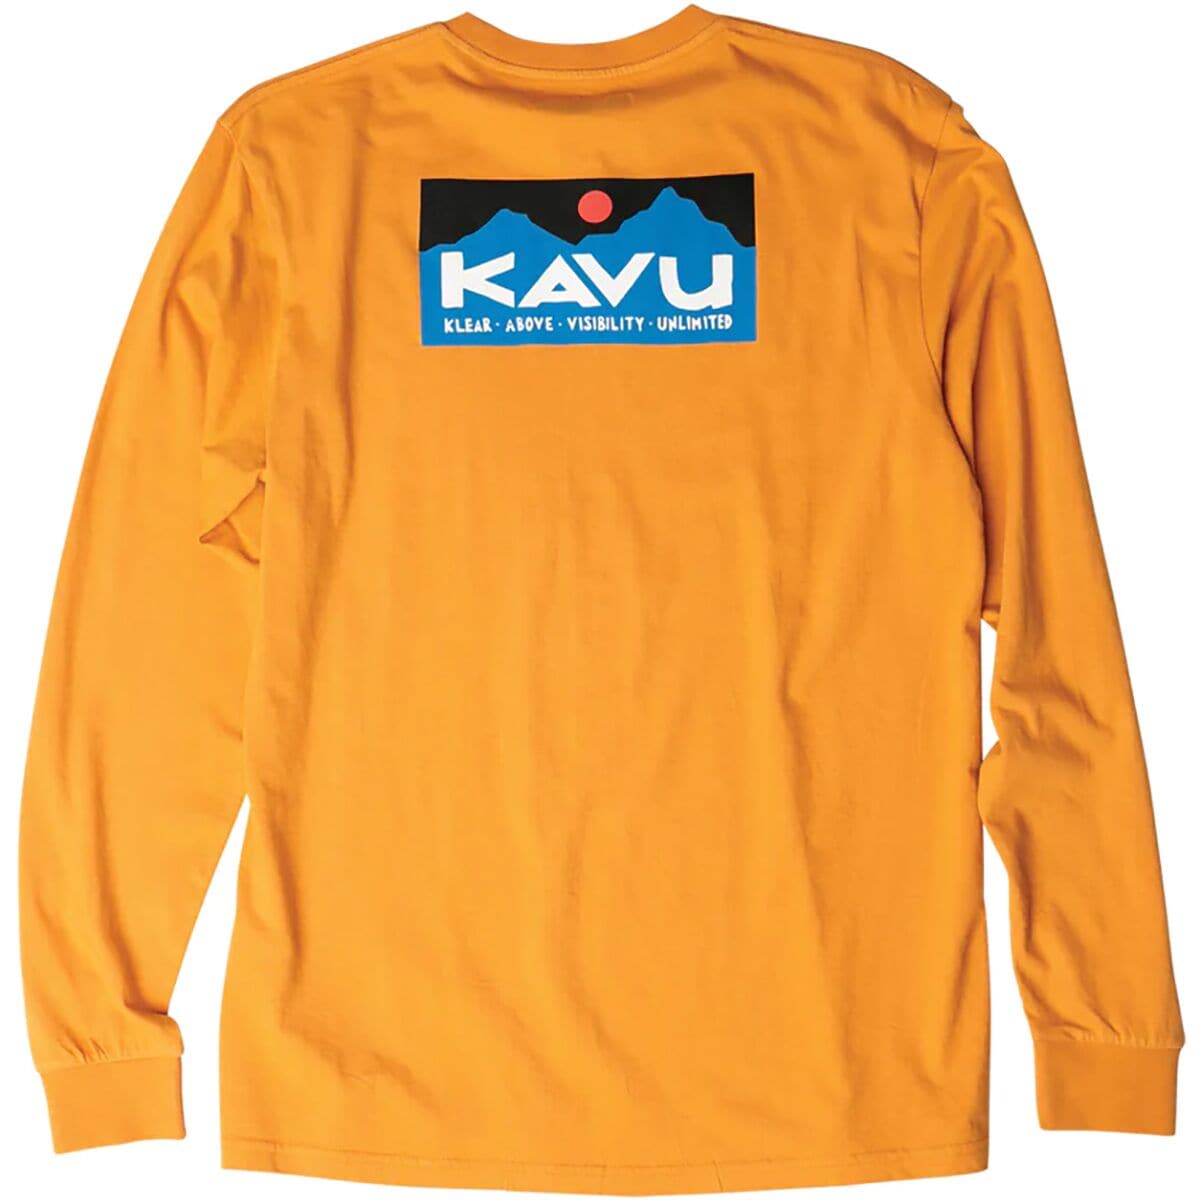 KAVU Etch Art Long-Sleeve T-Shirt - Men's